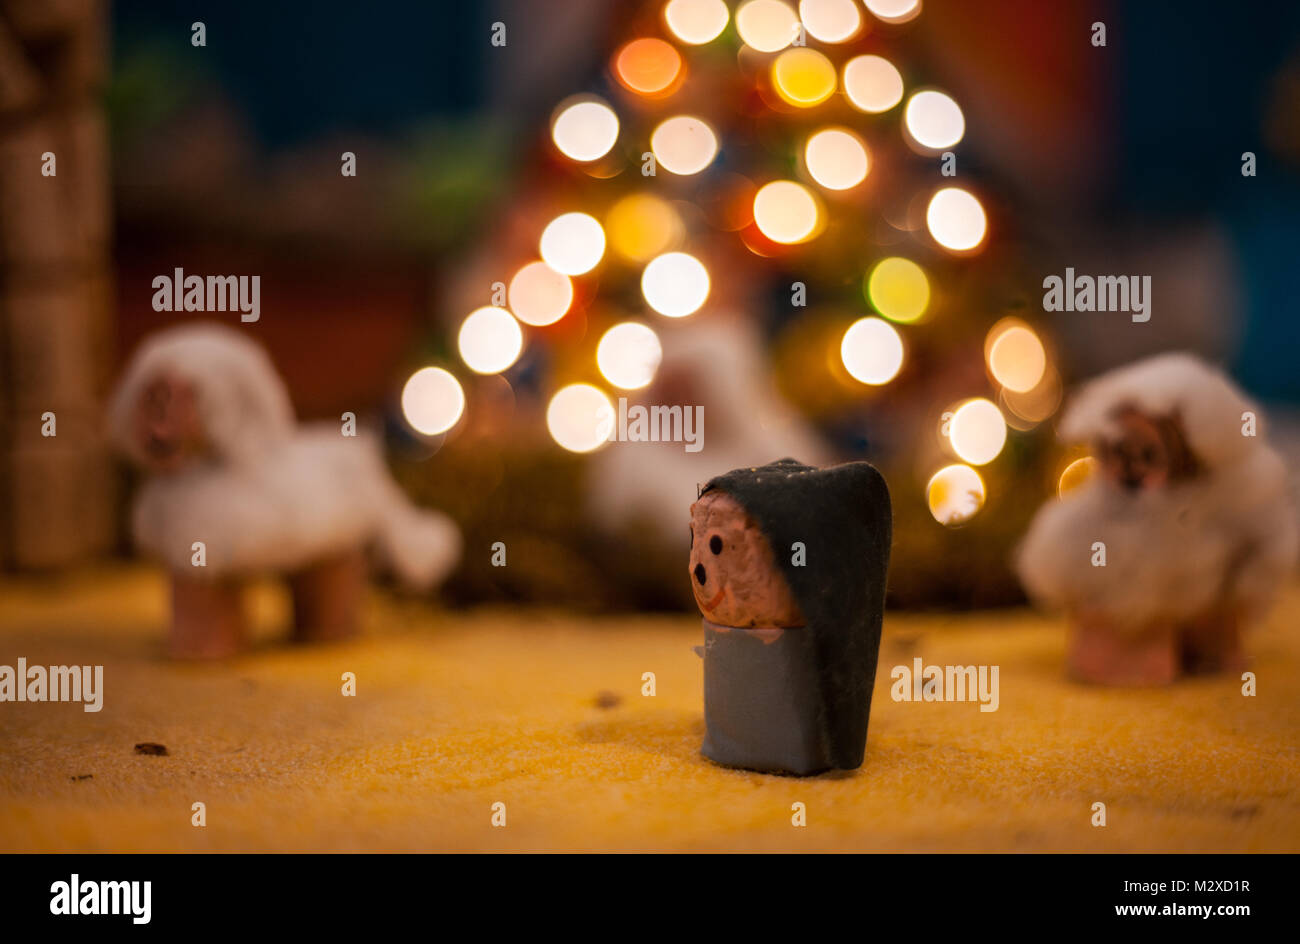 La main de Noël en carton bois coton.Scene représentée avec des animaux en peluche sur l'arbre de Noël illuminé - Recyclage artistique Banque D'Images